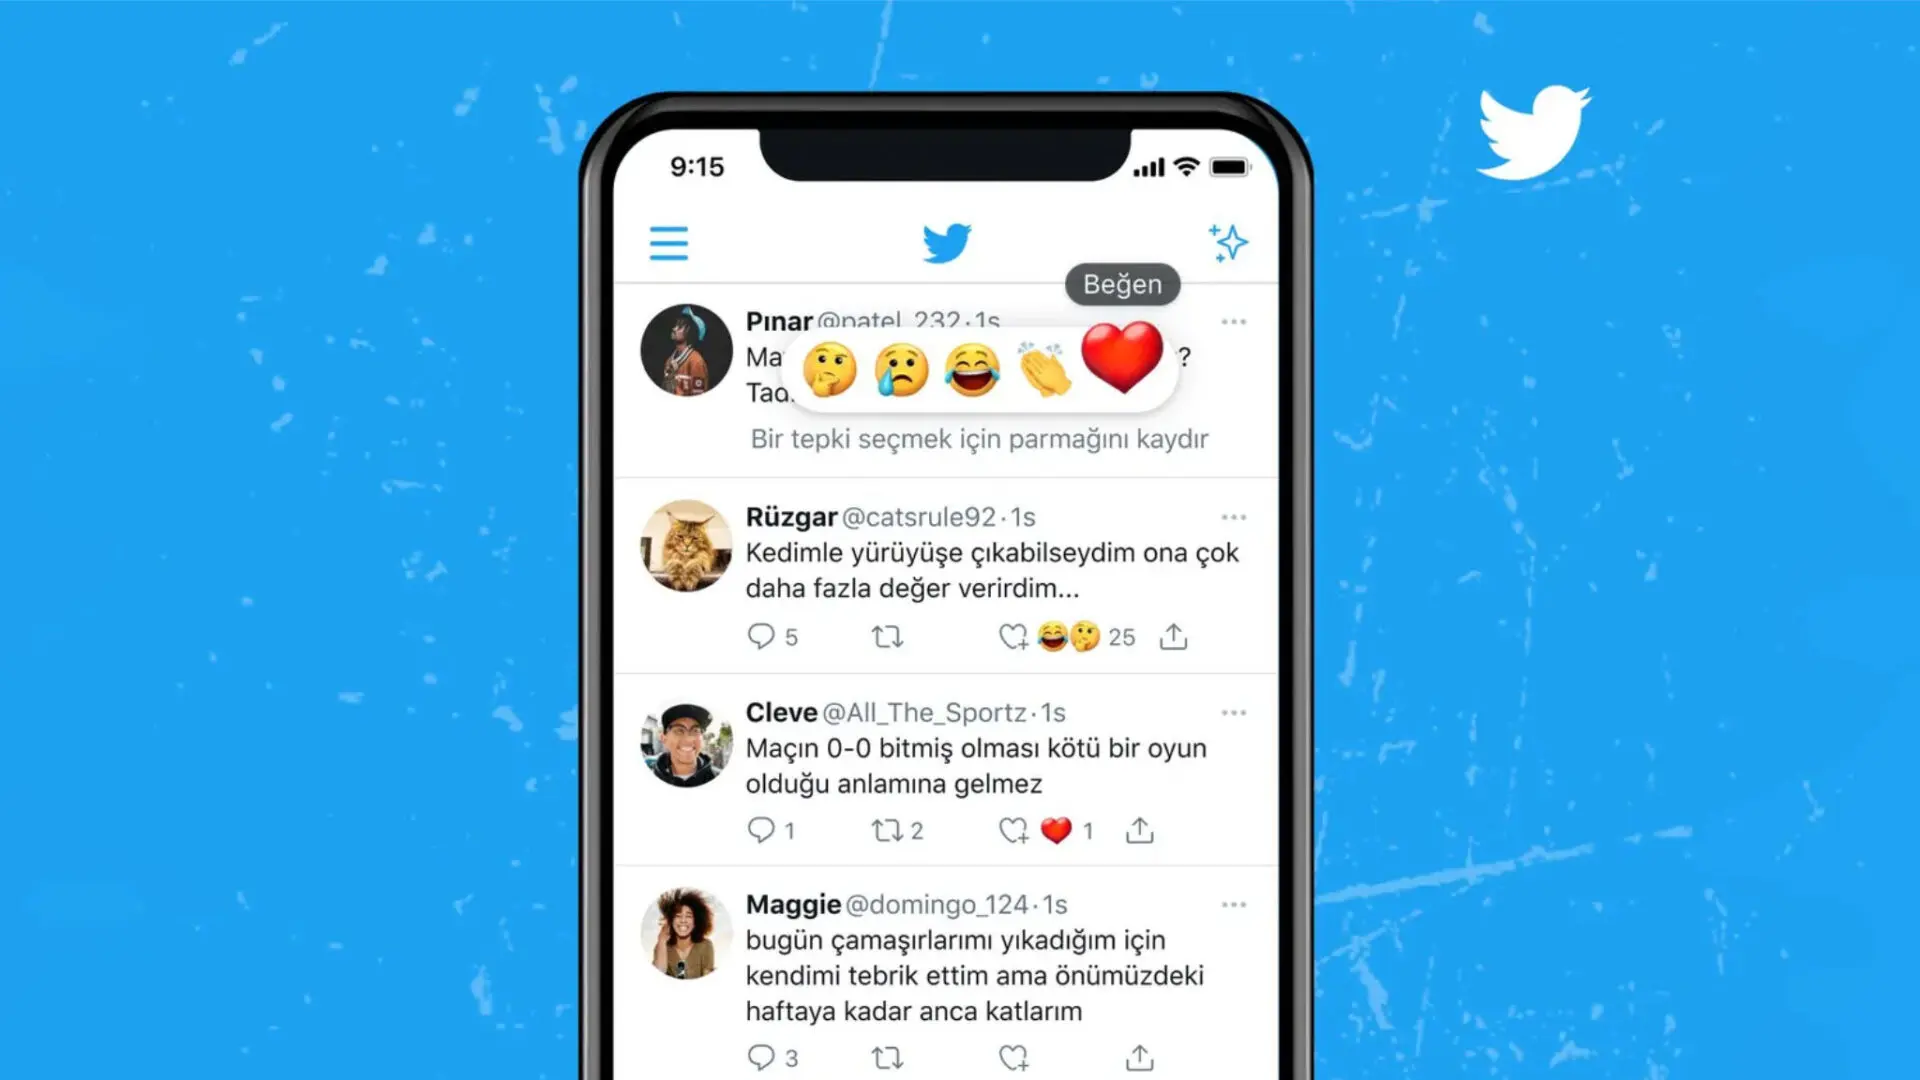 Twitter chạy thử tính năng Reaction và dán nhãn thông báo Chat Bot